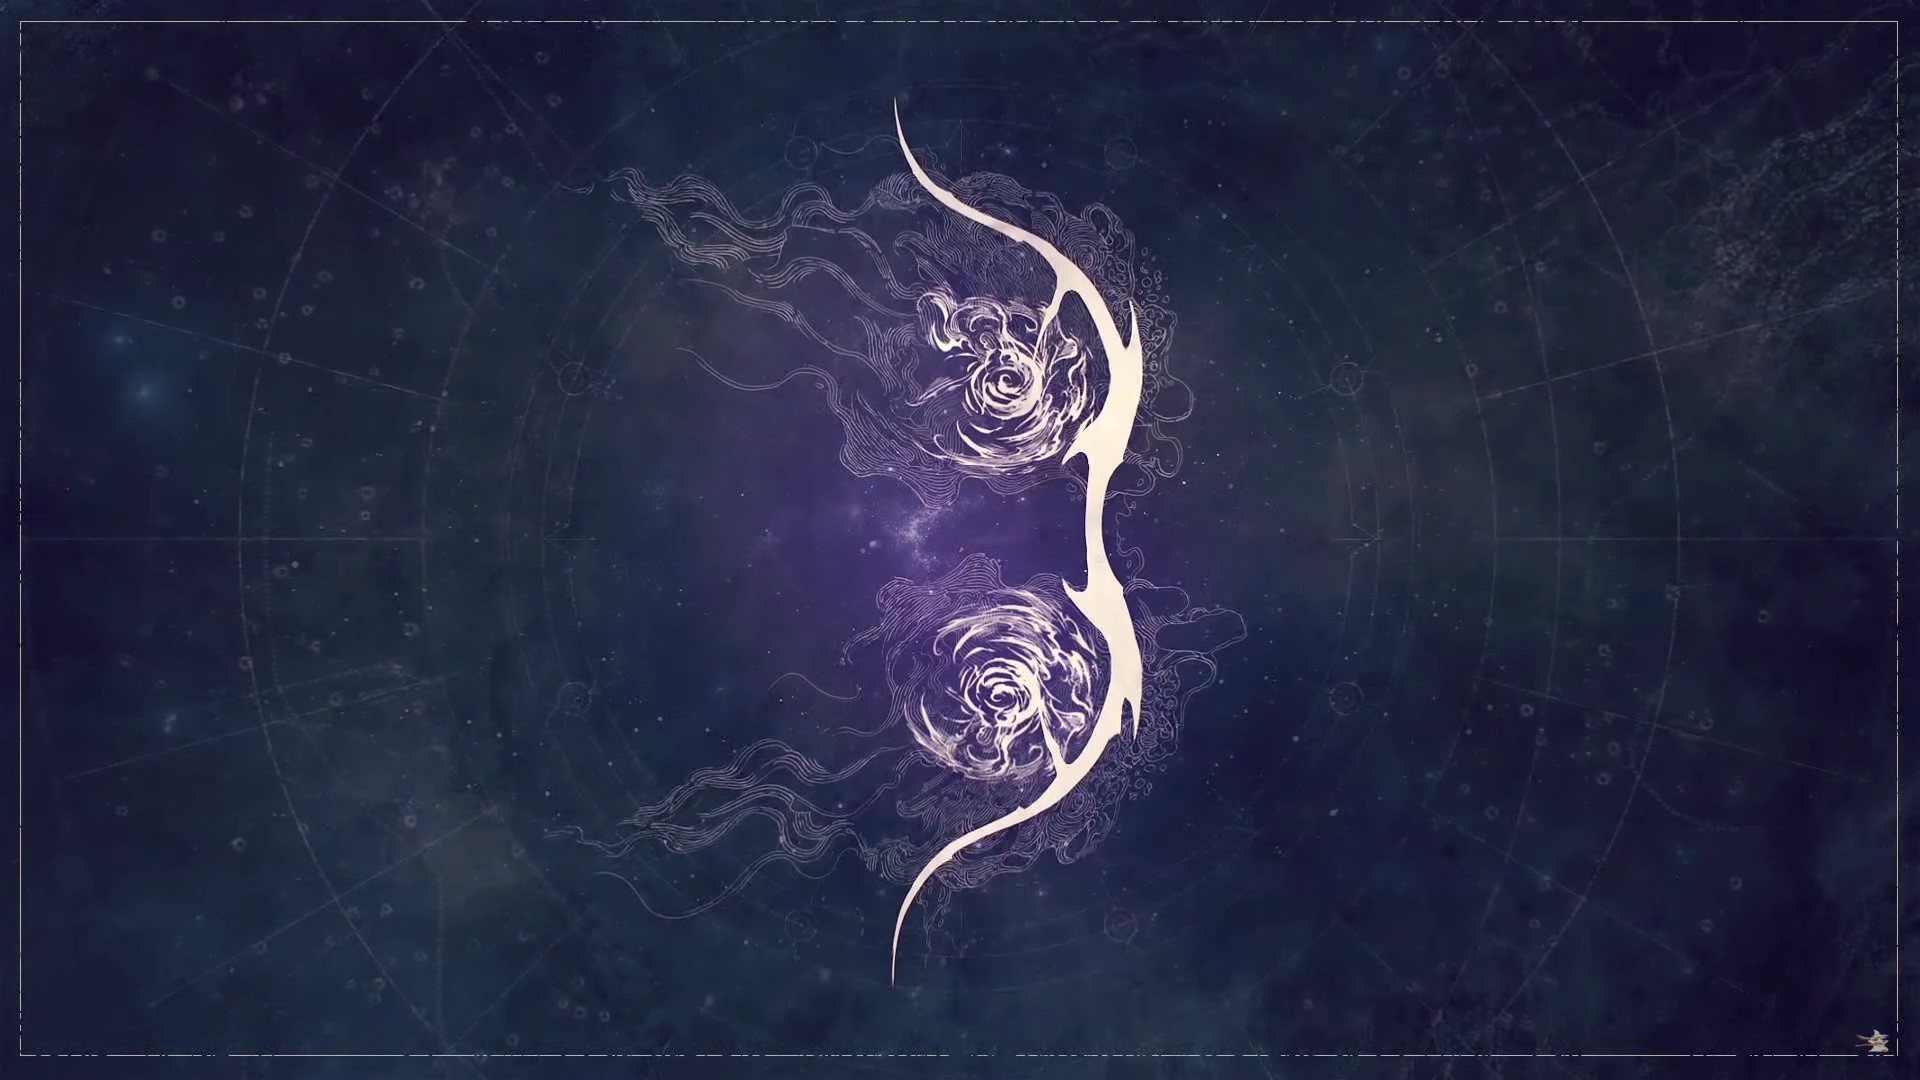 Destiny: The Taken King – Nightstalker Cutscene Artwork